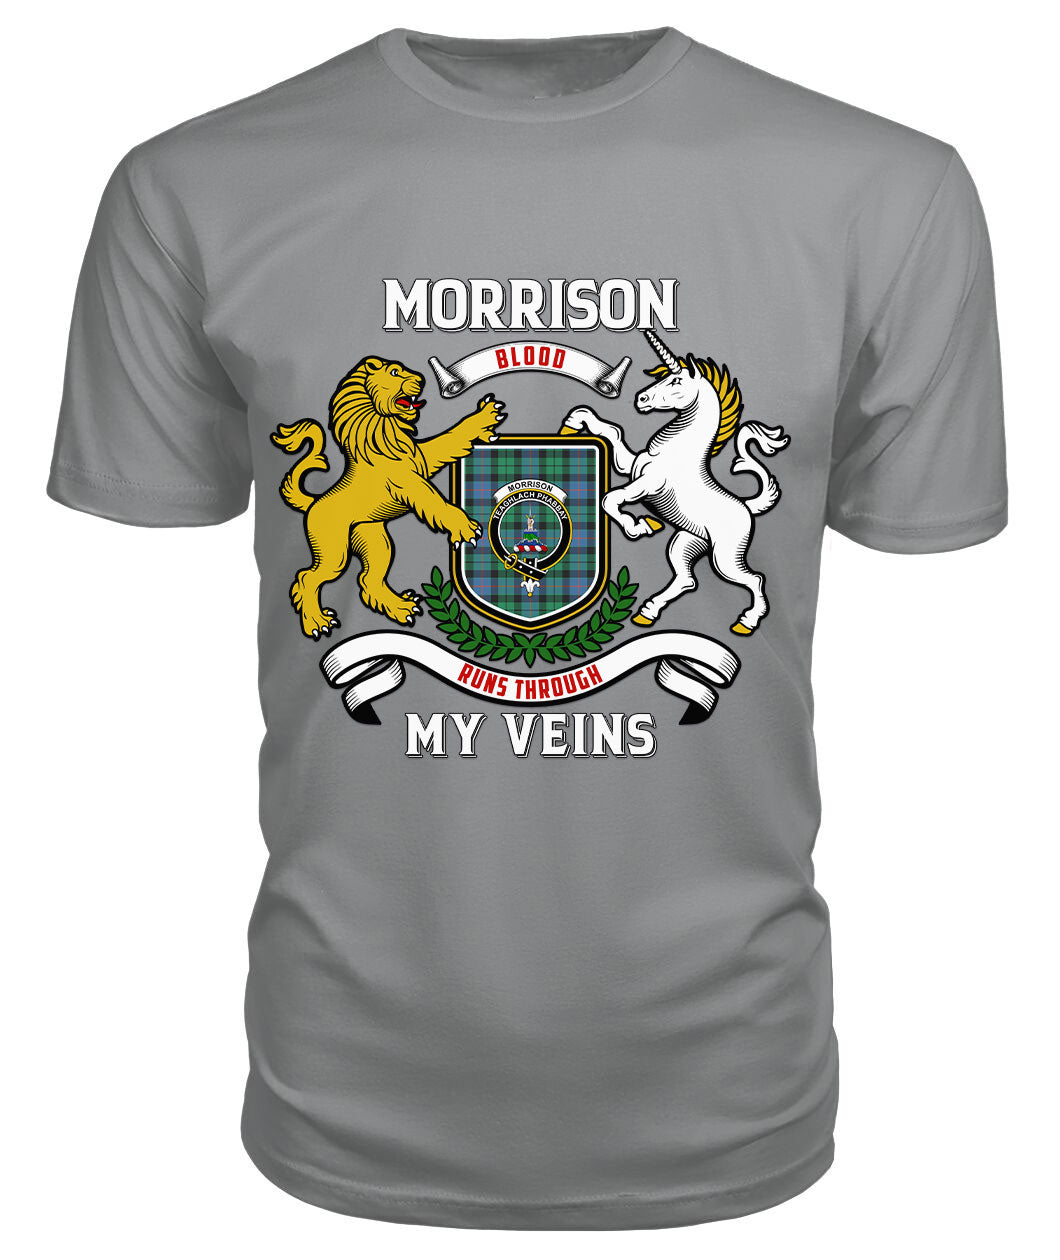 Morrison Ancient Tartan Crest 2D T-shirt - Blood Runs Through My Veins Style